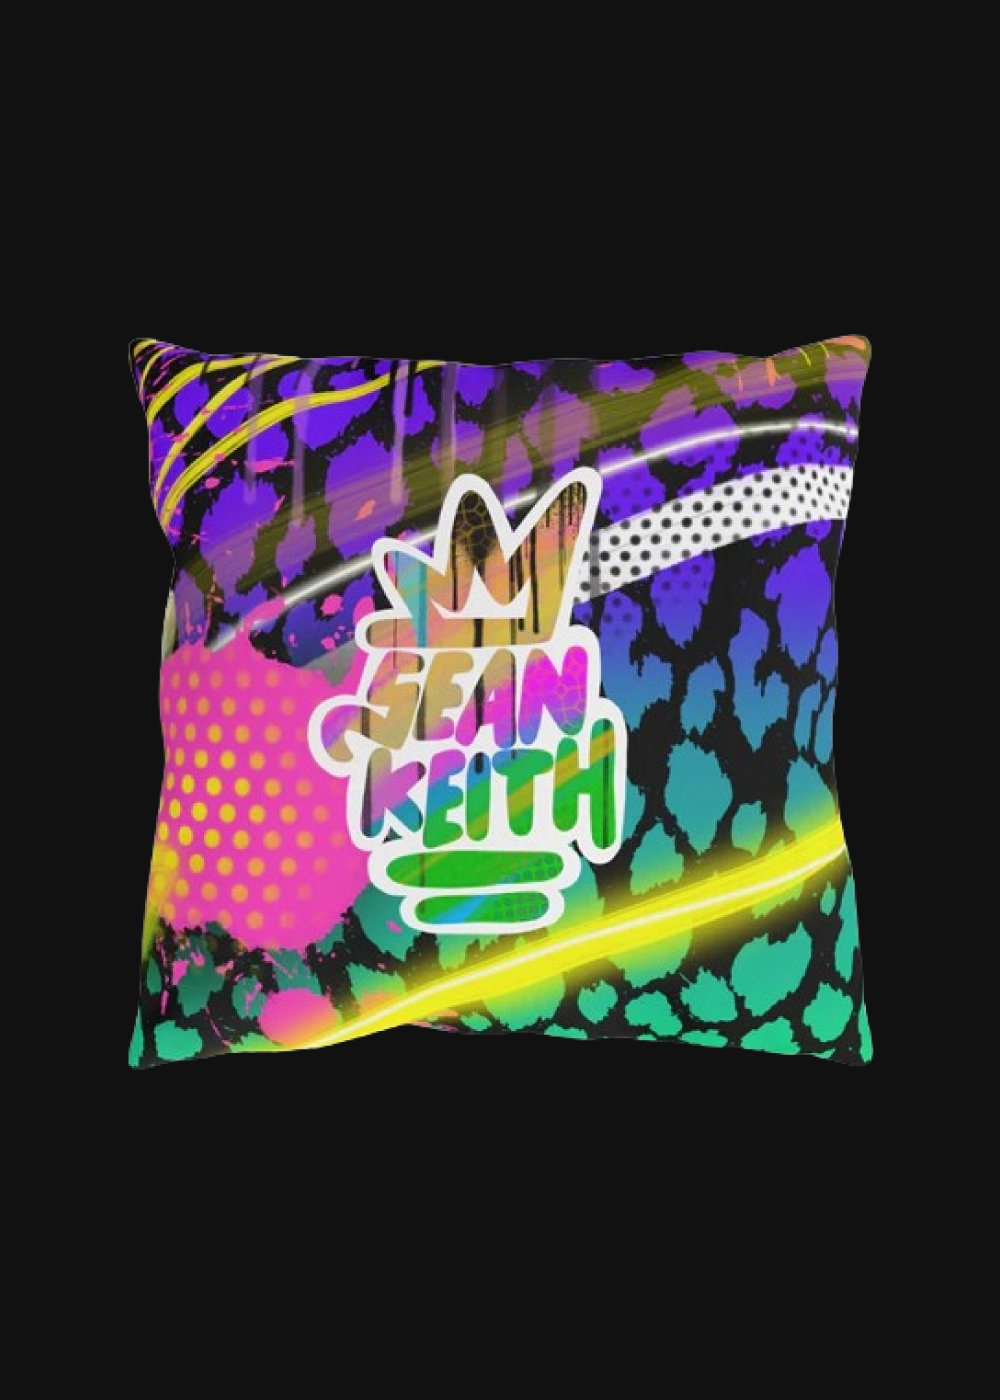 sean keith Outdoor Pillows - Sean Keith Art